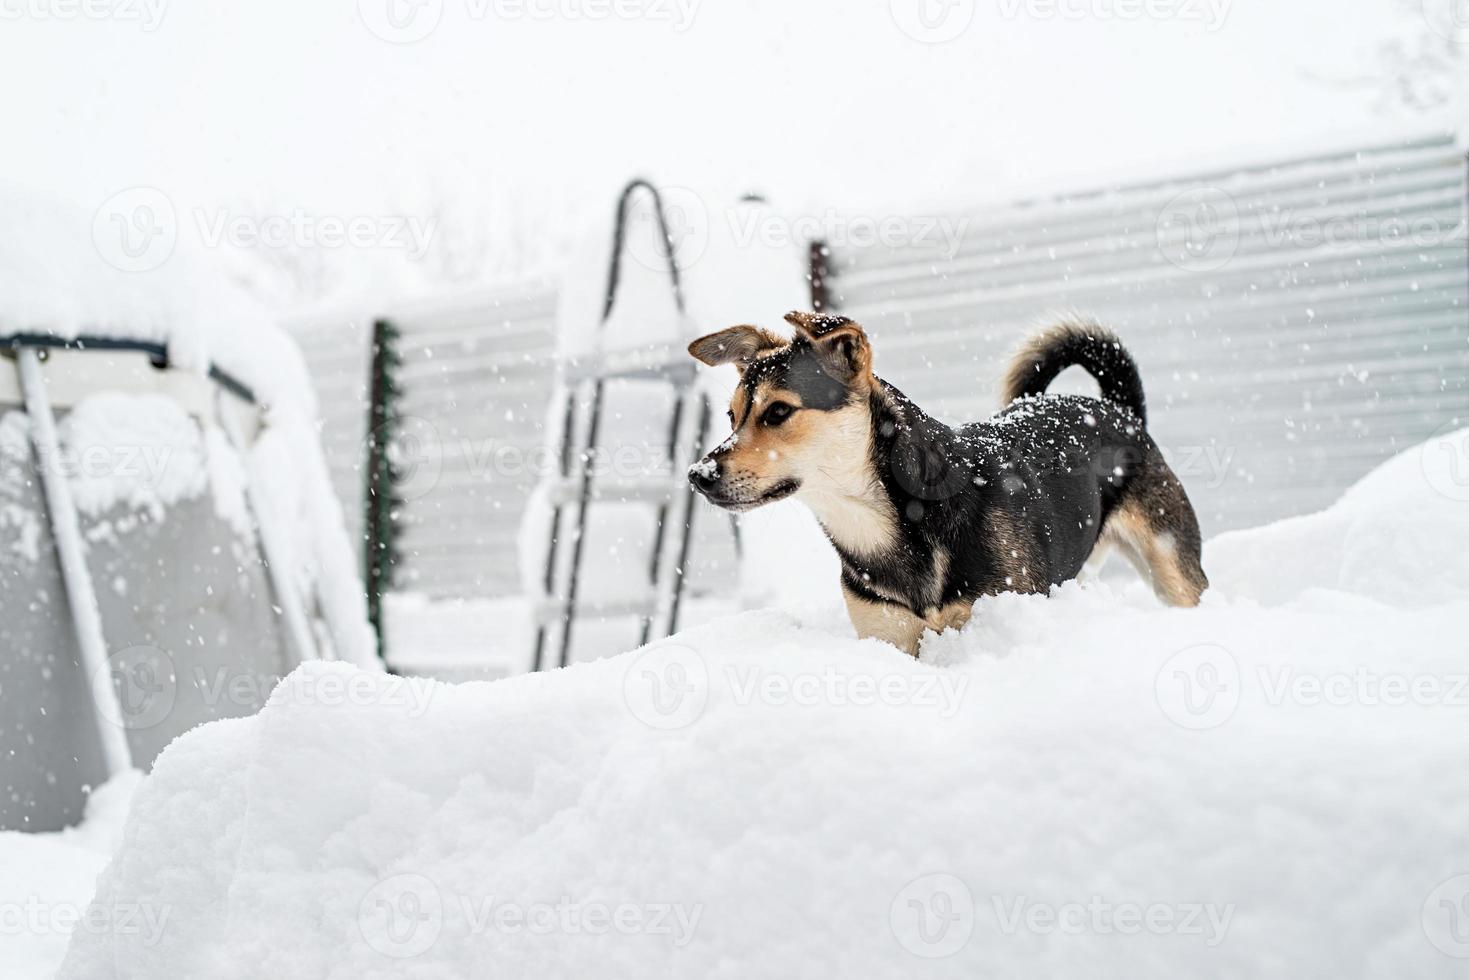 adorável cachorro sem raça definida brincando na neve no quintal foto